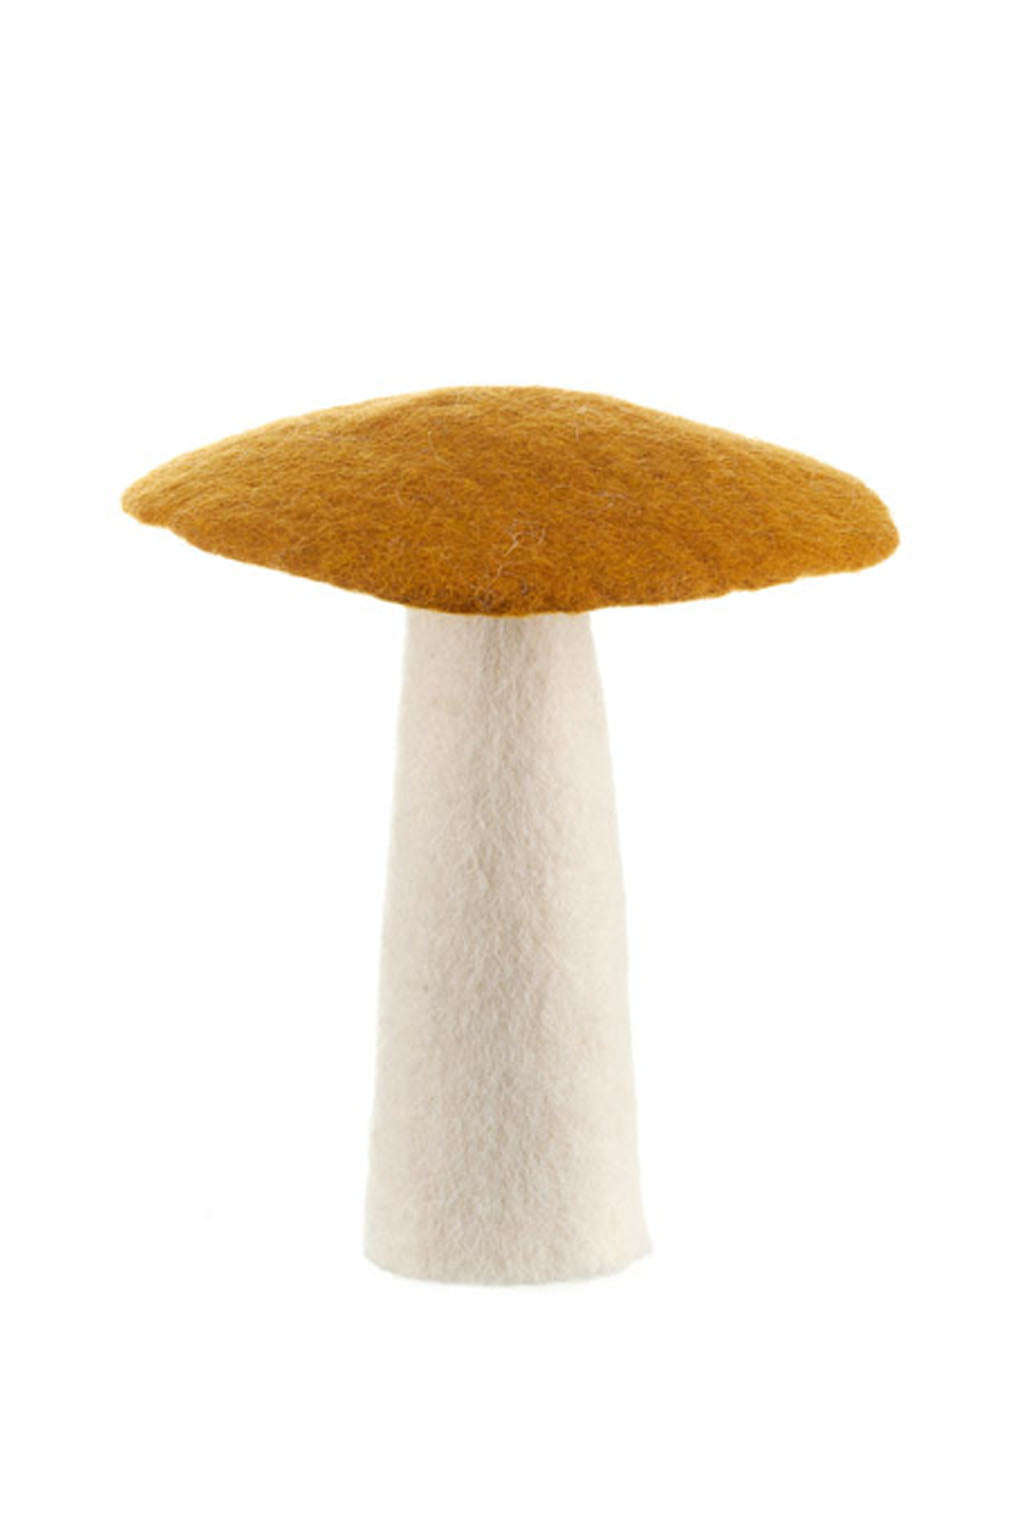 Mushroom - Extra Large 18cm